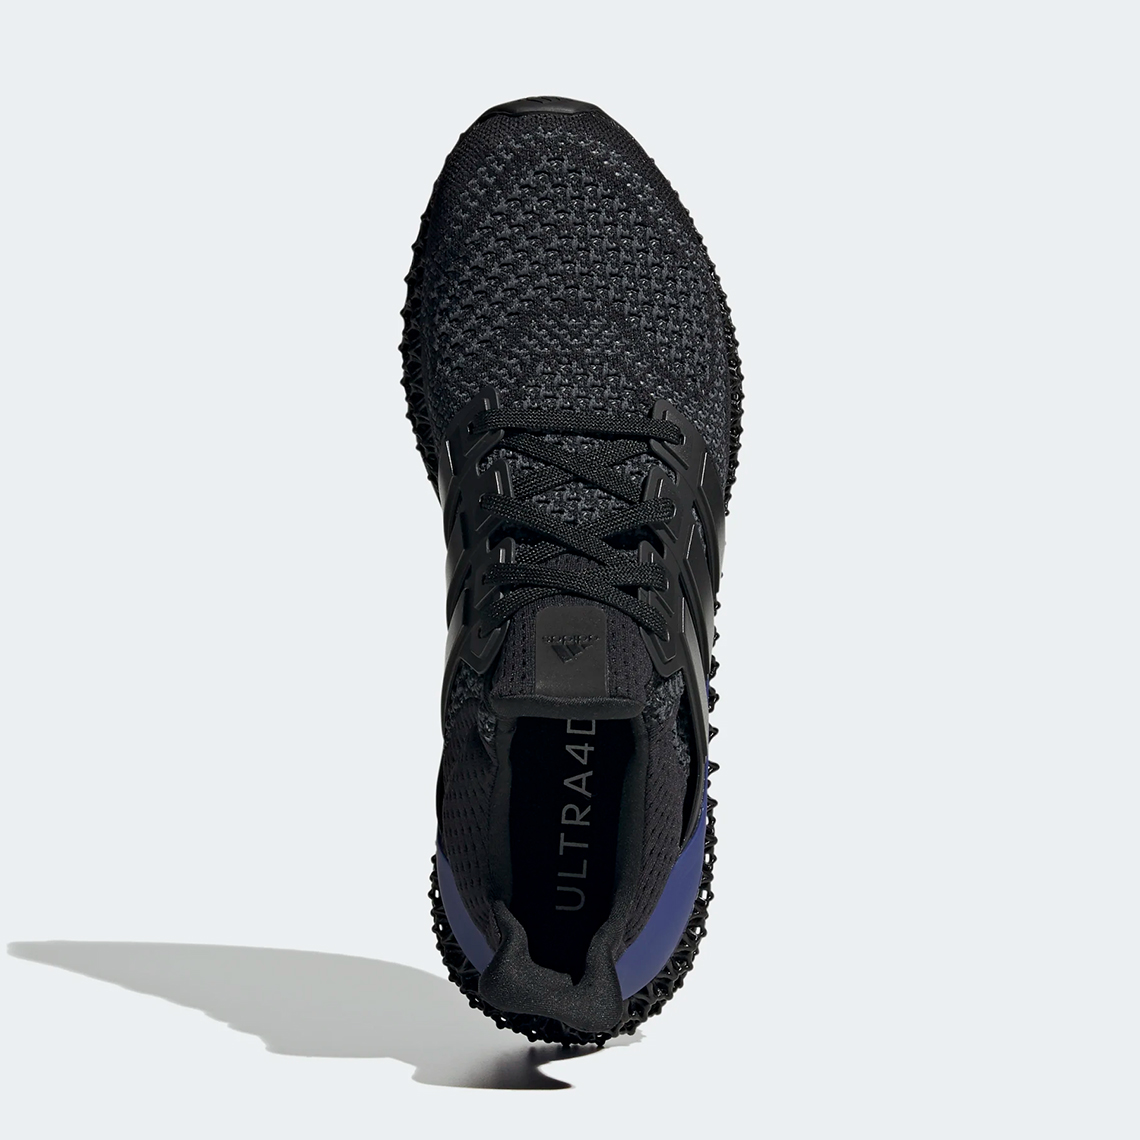 adidas ultra boost 4d black purple